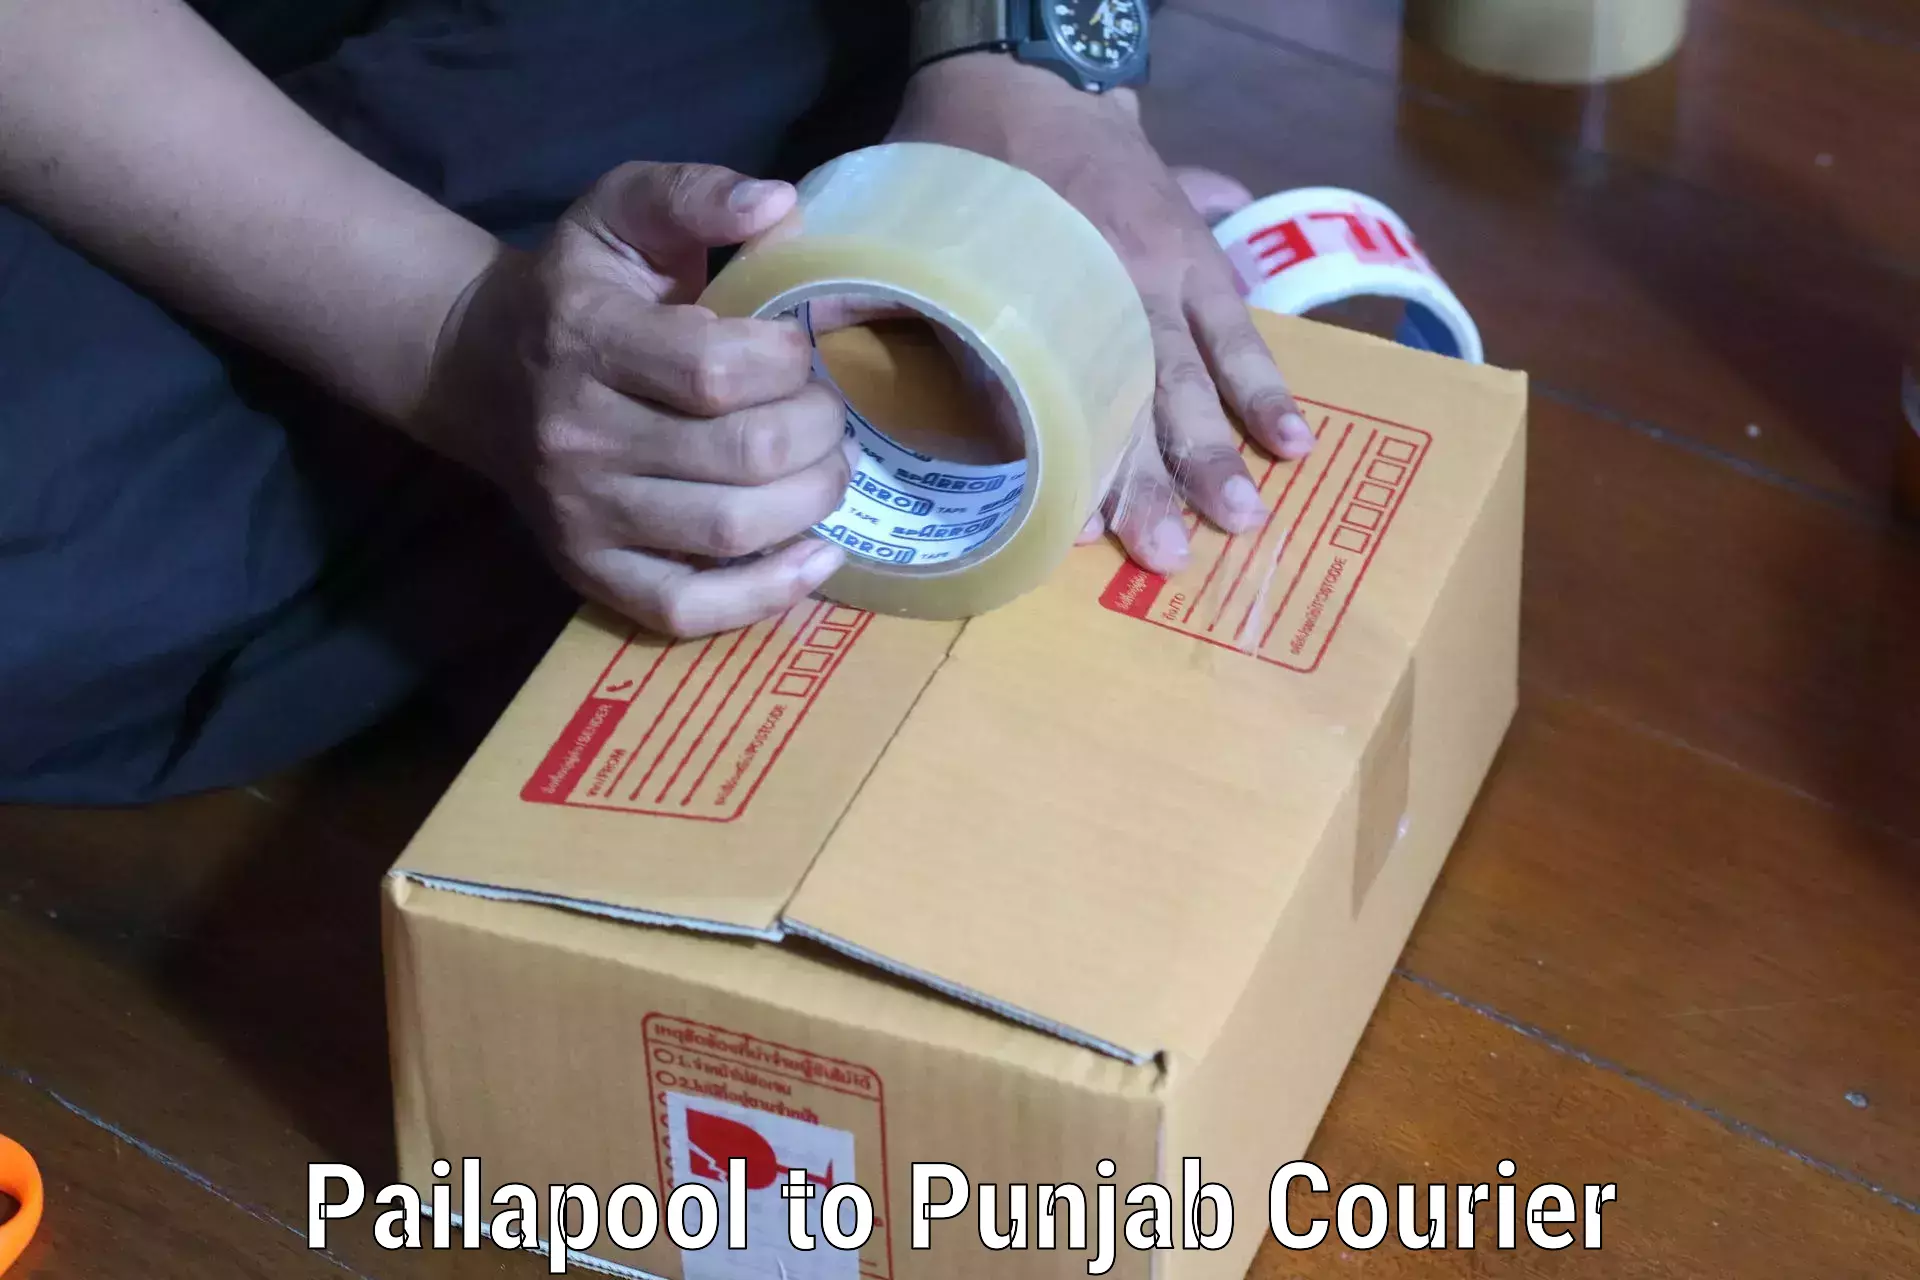 Reliable parcel services Pailapool to Patran